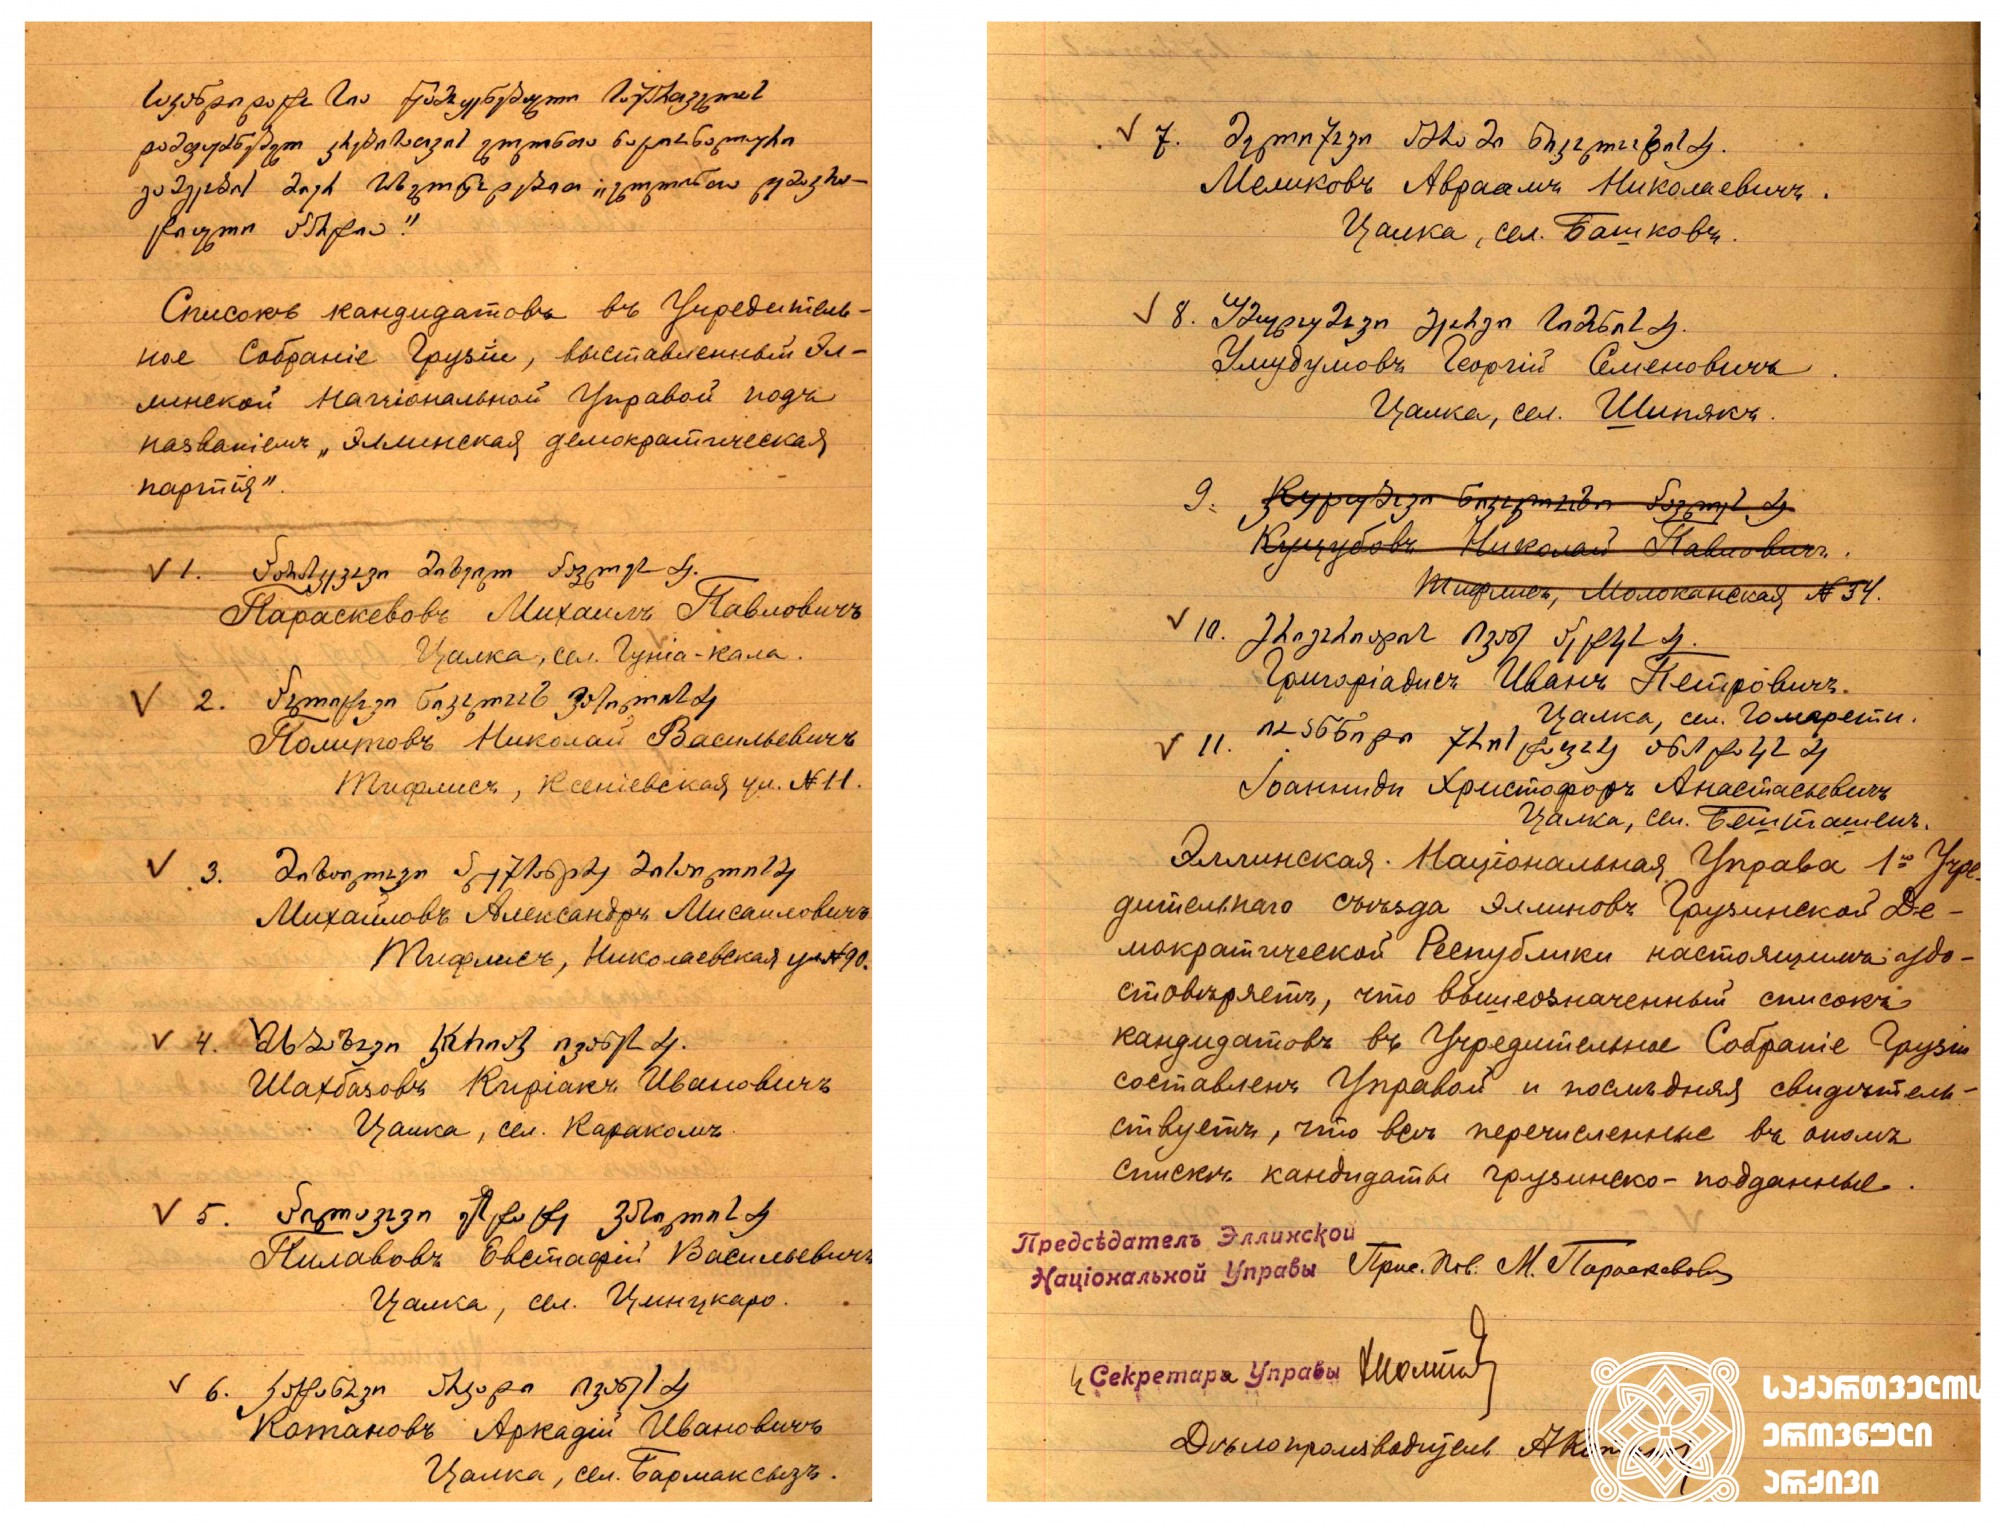 „ელინთა დემოკრატიული პარტიის“ კანდიდატთა სია, წამოყენებული საქართველოს დამფუძნებელი კრებისთვის ელინთა ეროვნული გამგეობის მიერ
1919 წელი. <br>
 List of candidates of the Hellenic Democratic Party, nominated for the Constituent Assembly of Georgia by the Hellenic National Board. <br>
1919.